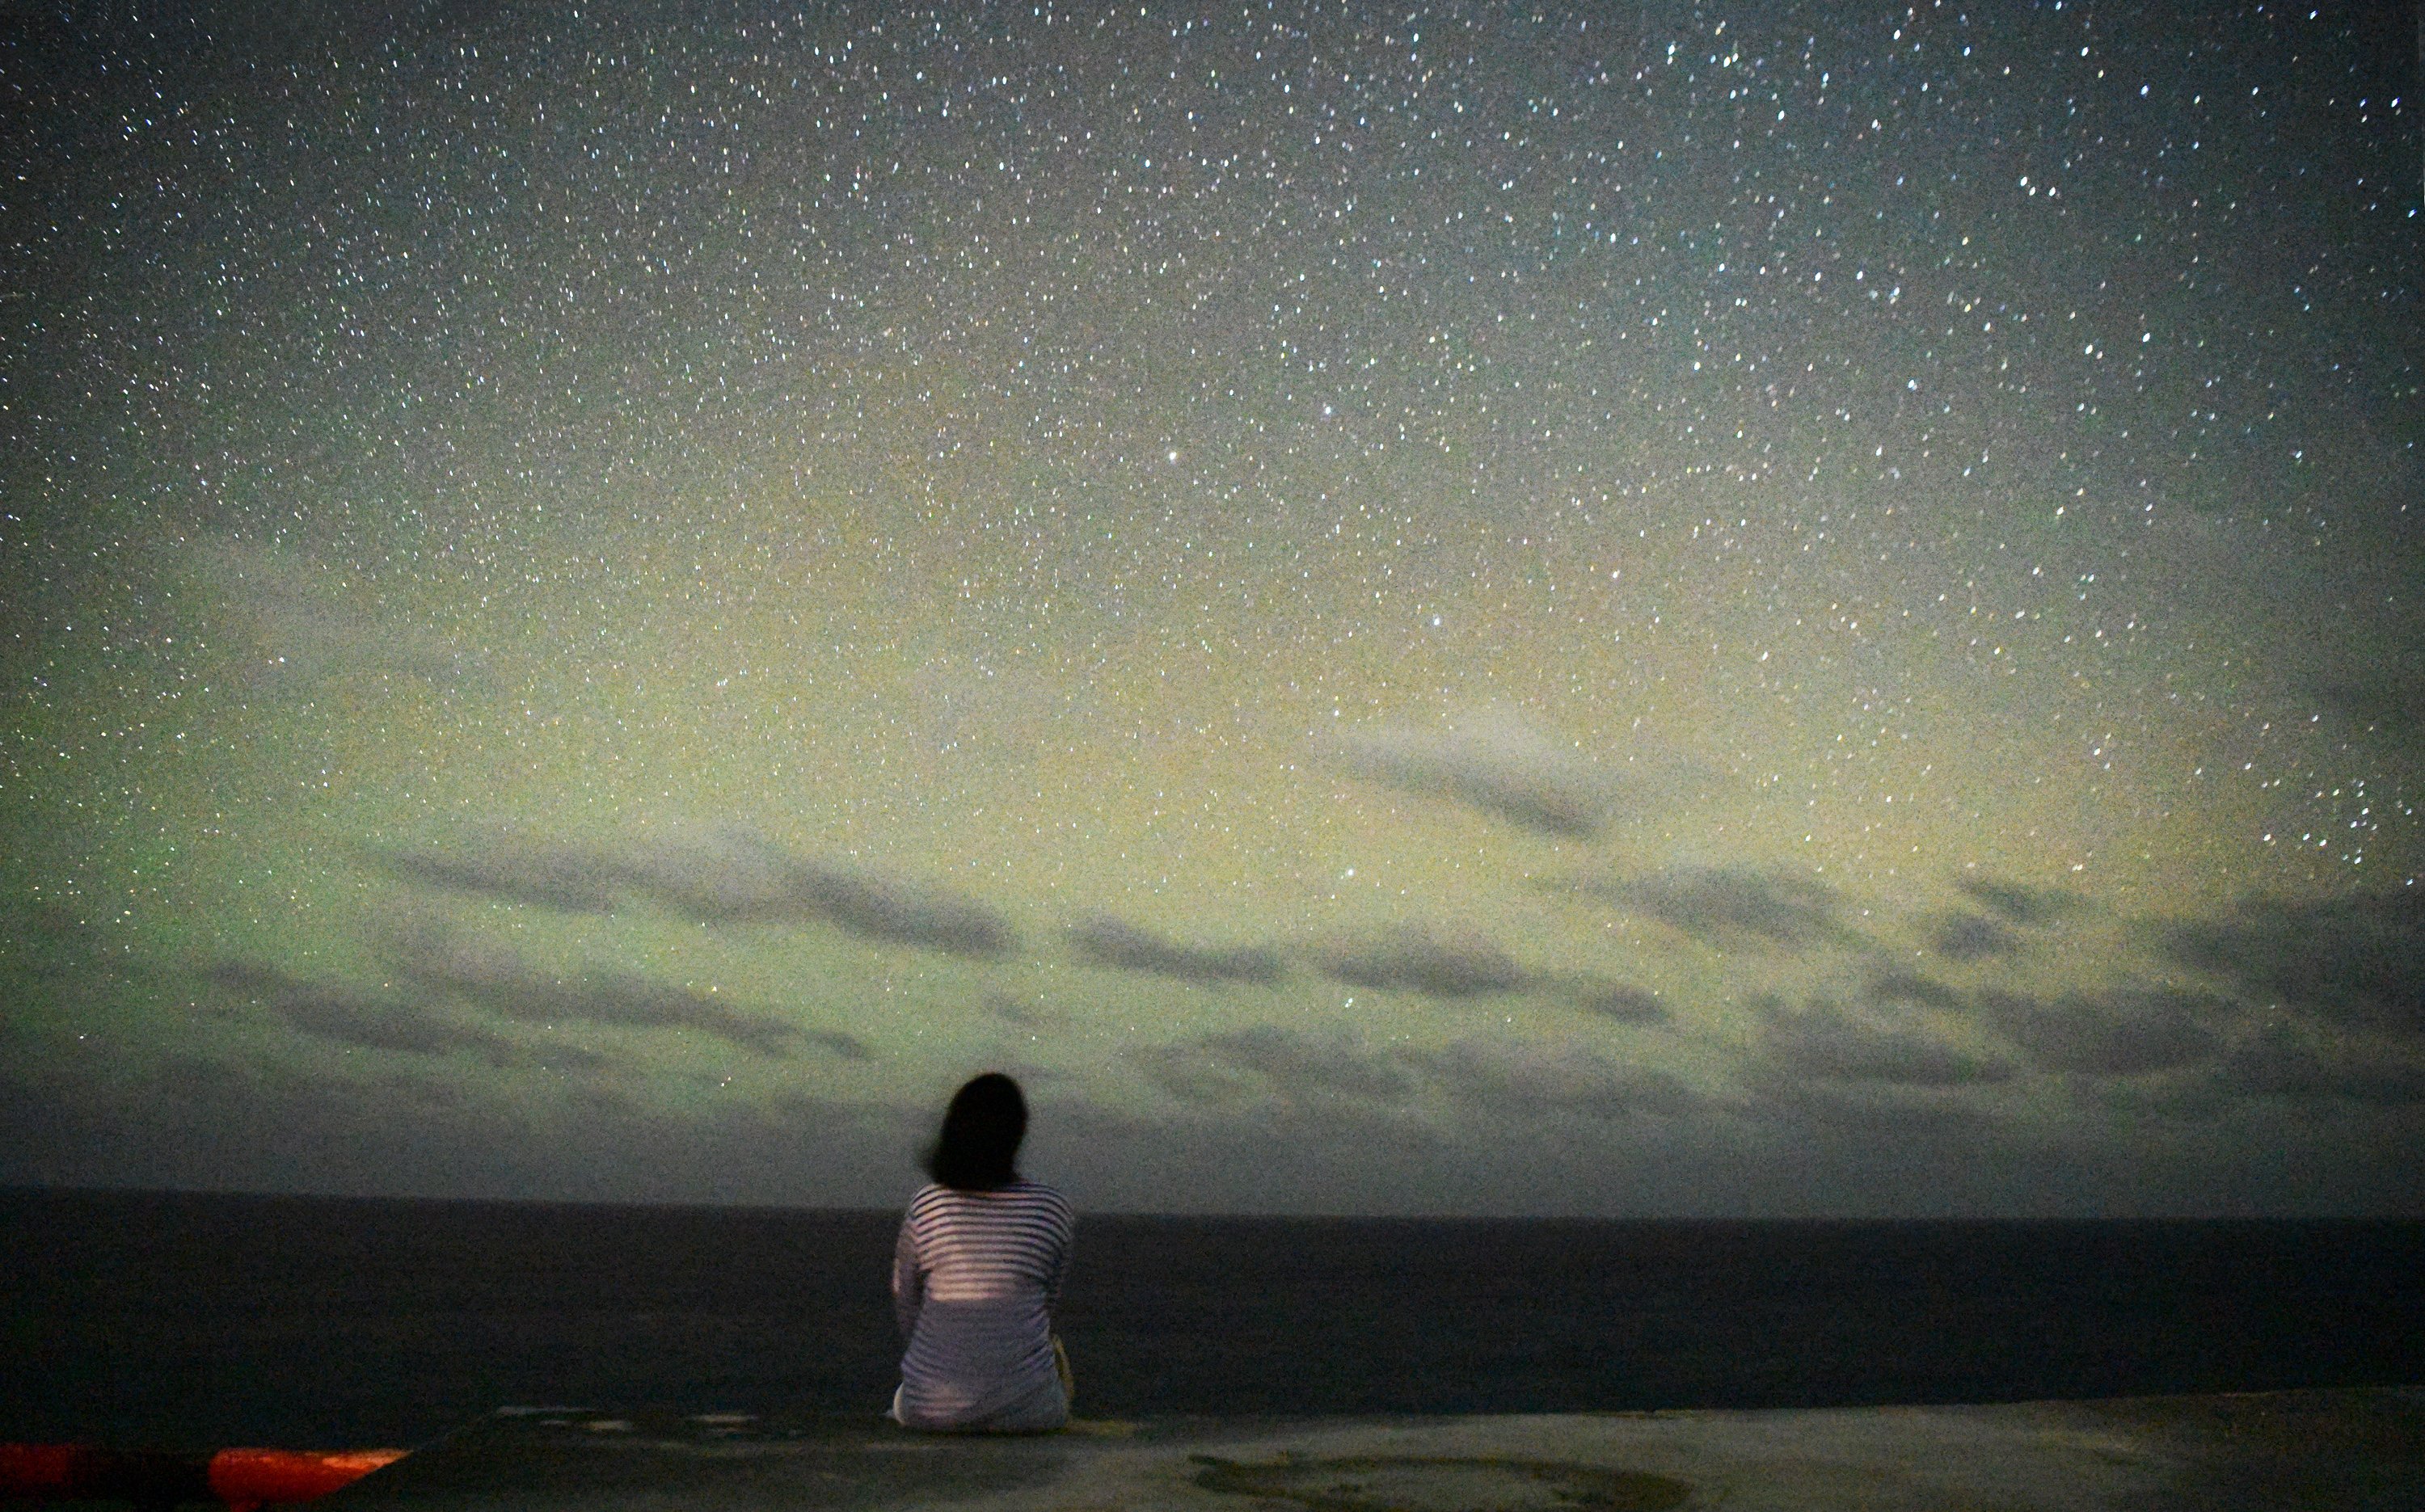 사이판 북부의 만세절벽을 찾은 별빛투어 참가자가 남태평양 위로 아이맥스 영화처럼 펼쳐진 별들을 바라보고 있다. 만세절벽 일대는 미세먼지와 광해가 적어 ‘별멍’의 명소로 이름이 높다.